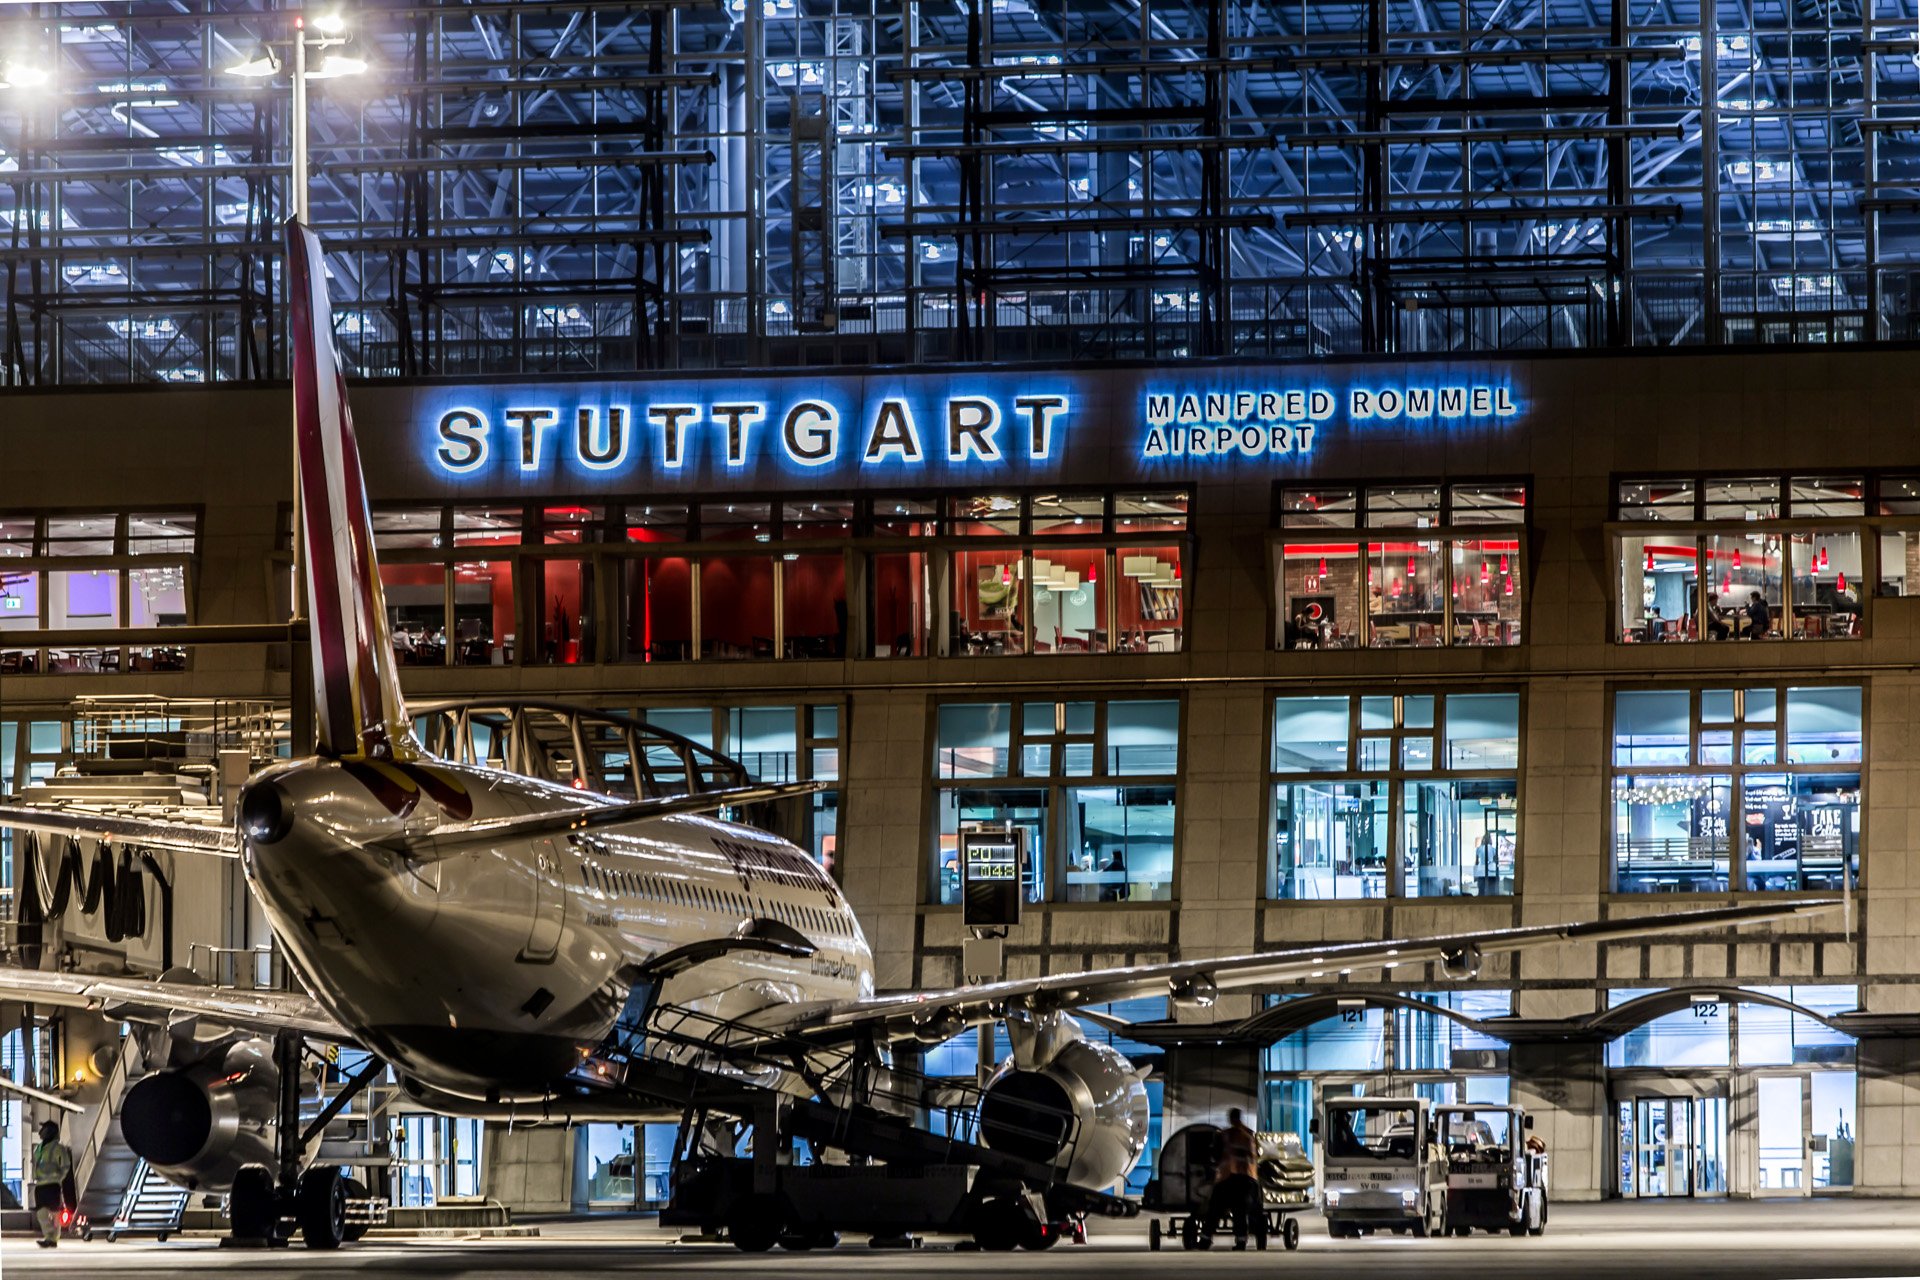 Aeroporto de Stuttgart implementa novo plano de redução de carbono até 2040